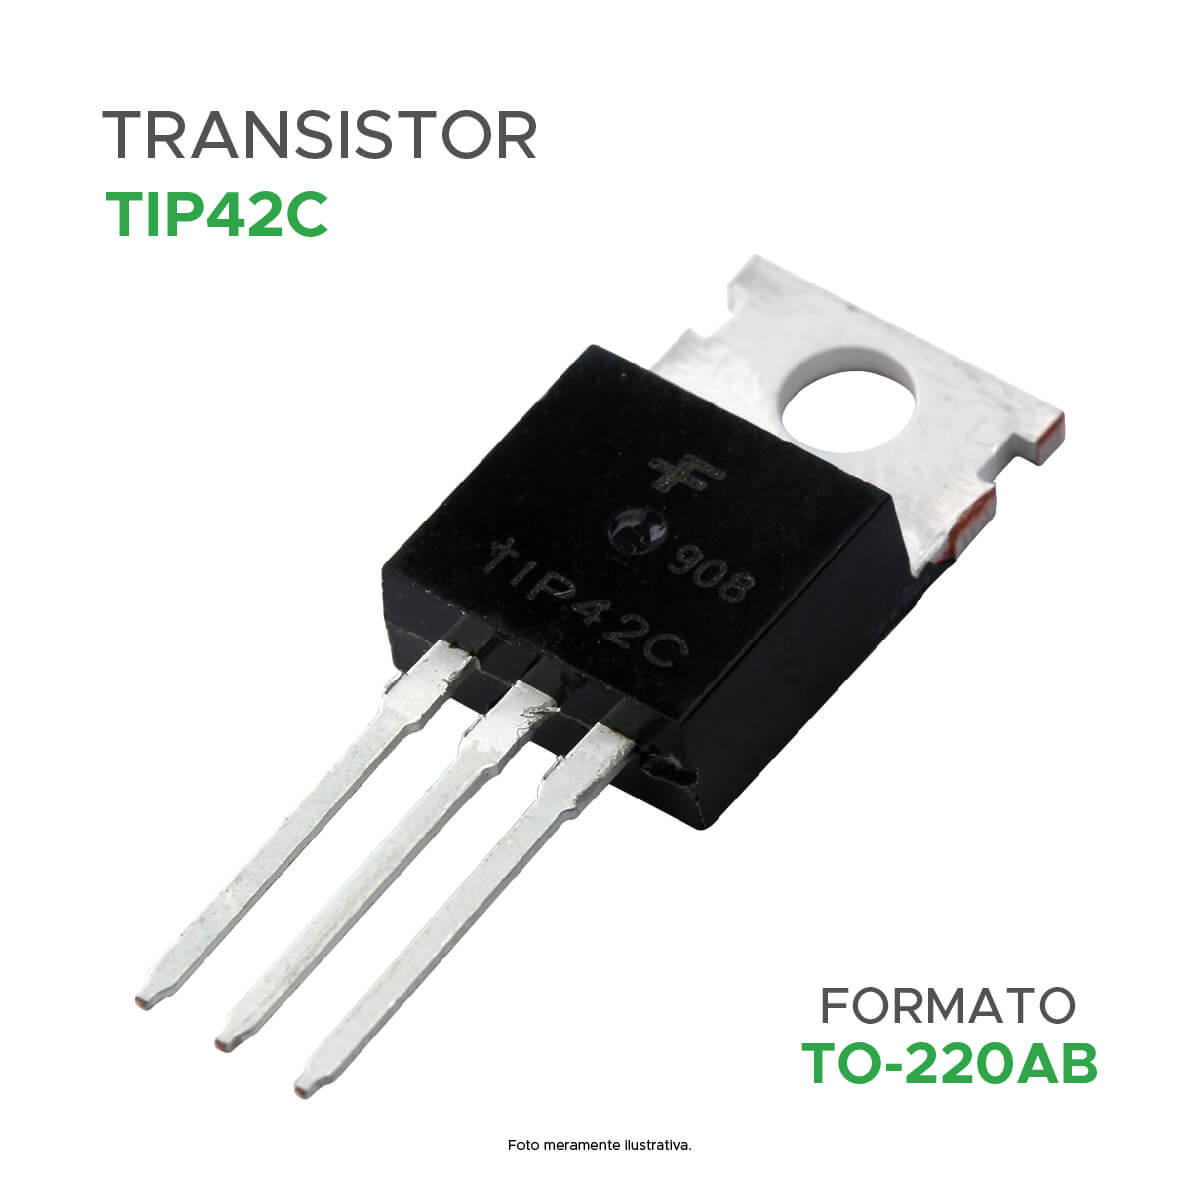 Transistor Tip42c Tip 42c Tip42 To-220 - ChipSCE - Mixtou